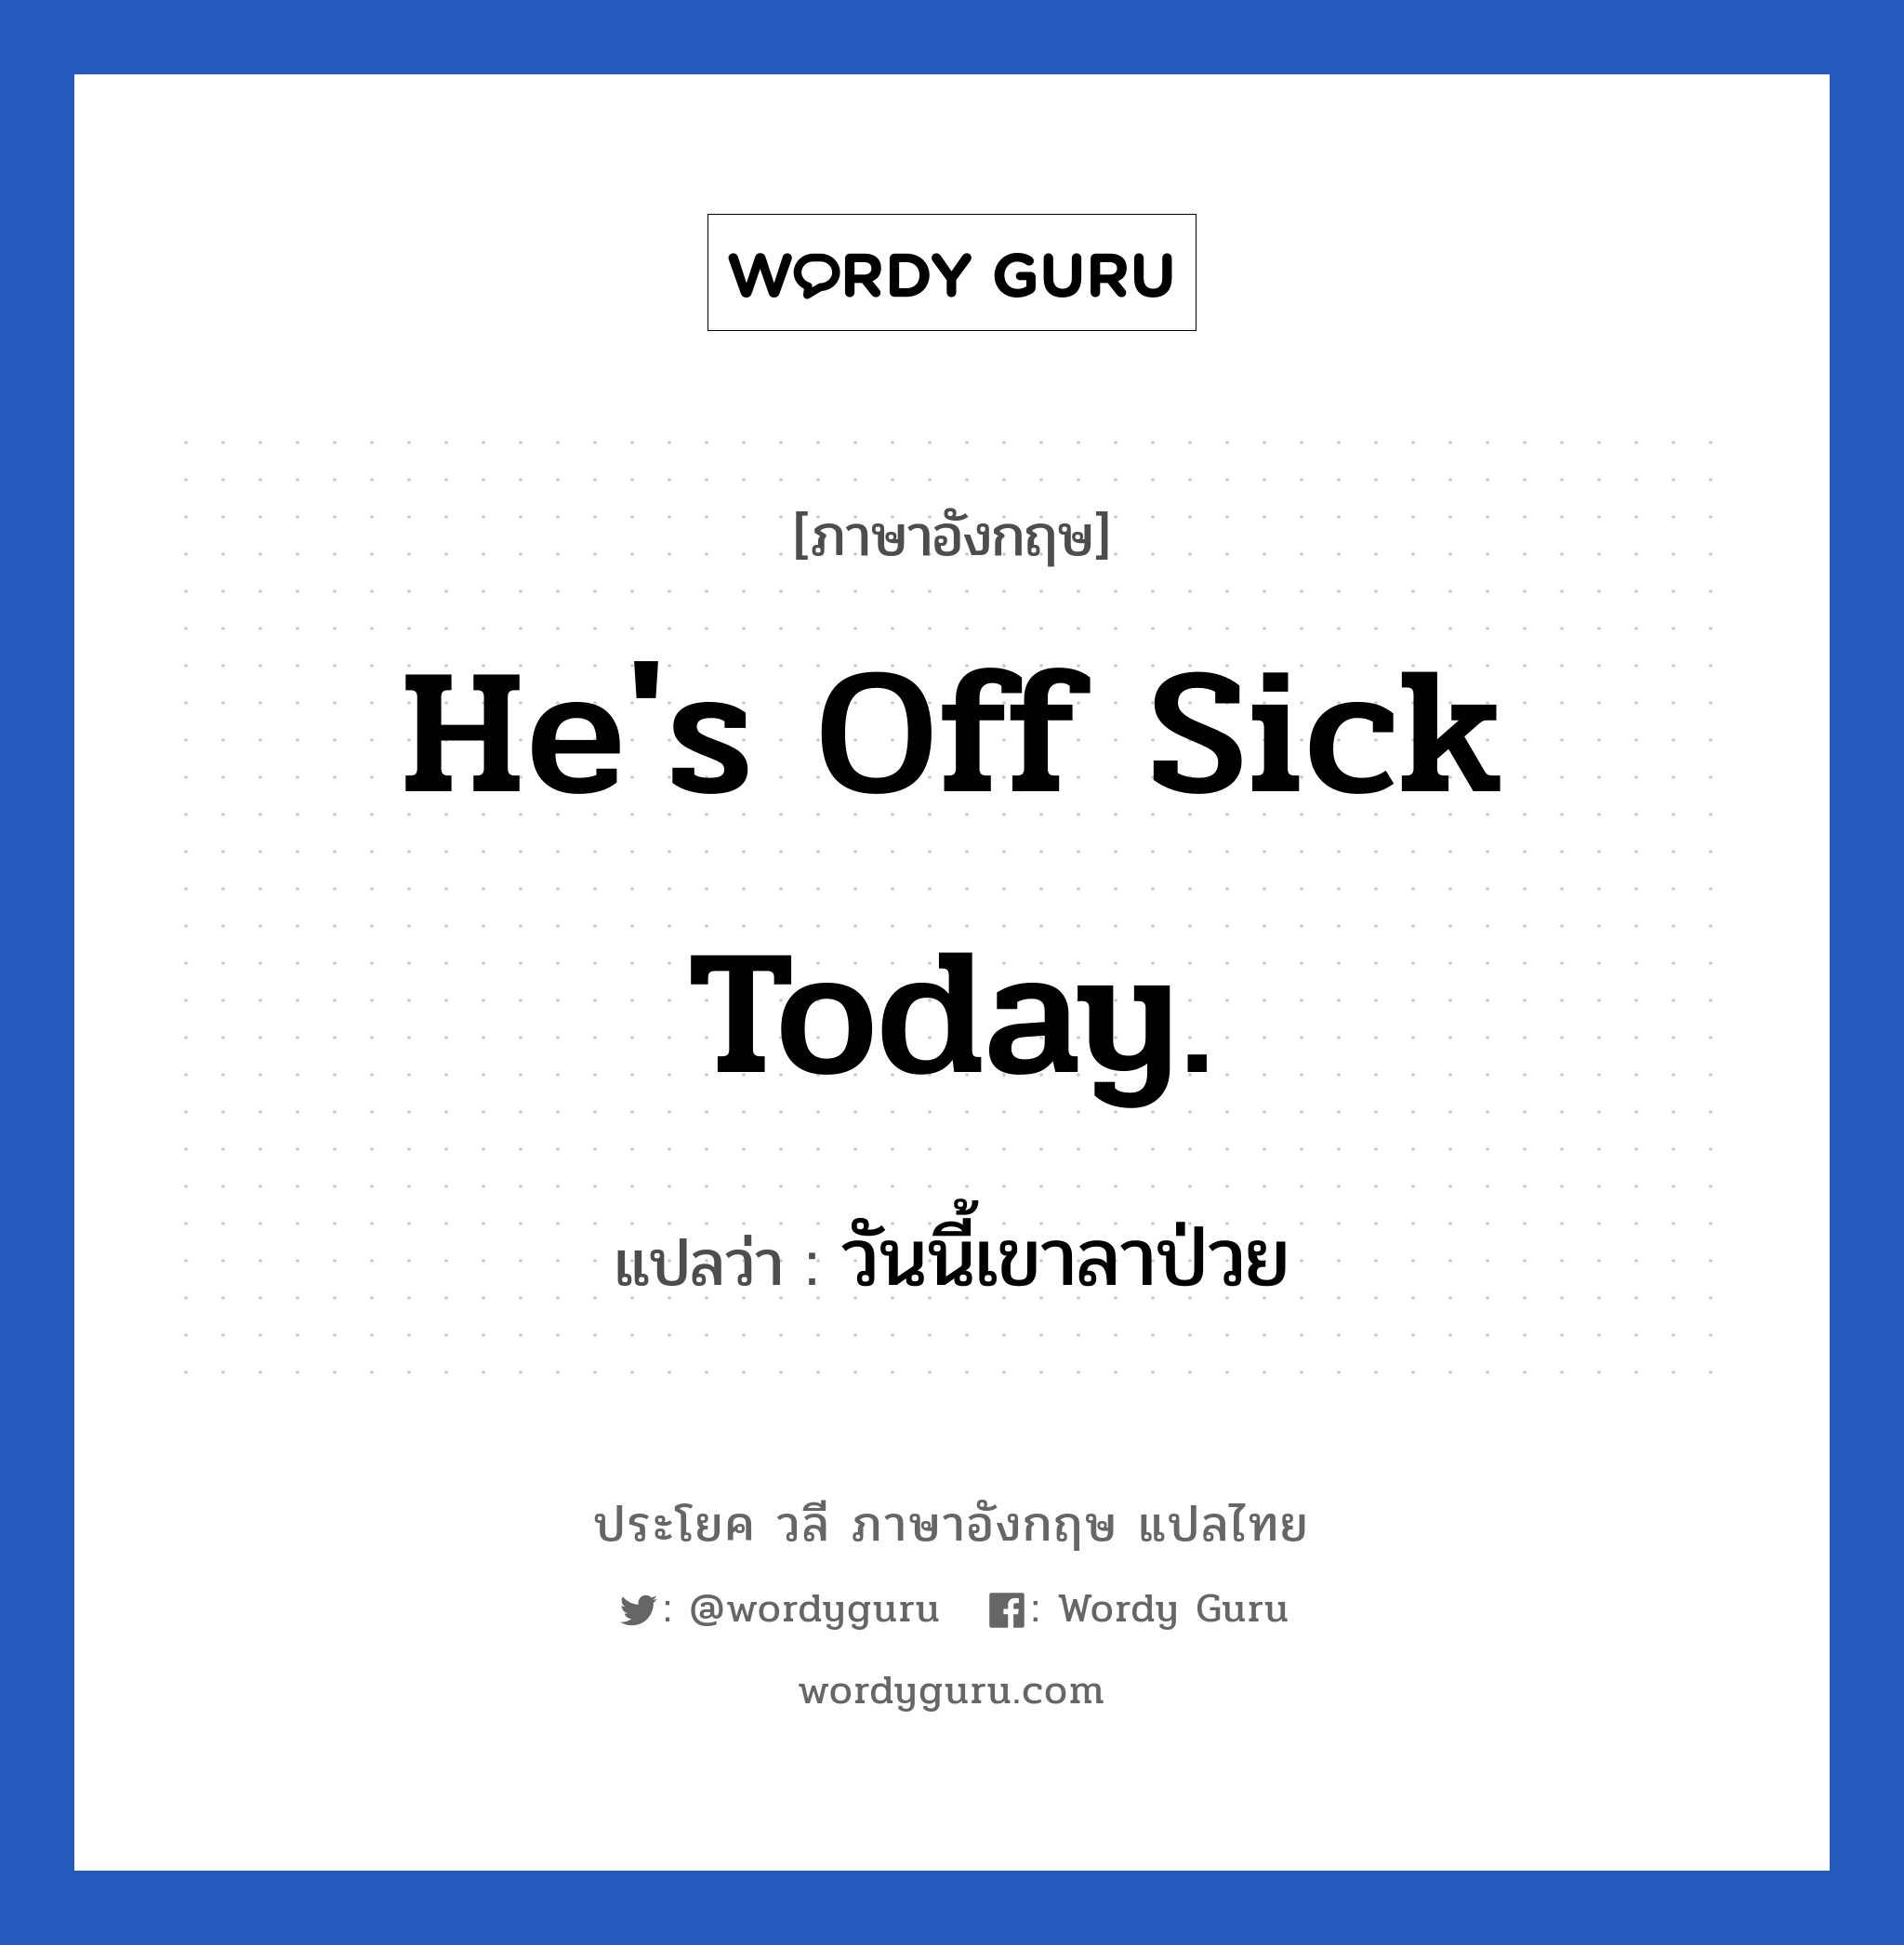 วันนี้เขาลาป่วย ภาษาอังกฤษ?, วลีภาษาอังกฤษ วันนี้เขาลาป่วย แปลว่า He's off sick today.